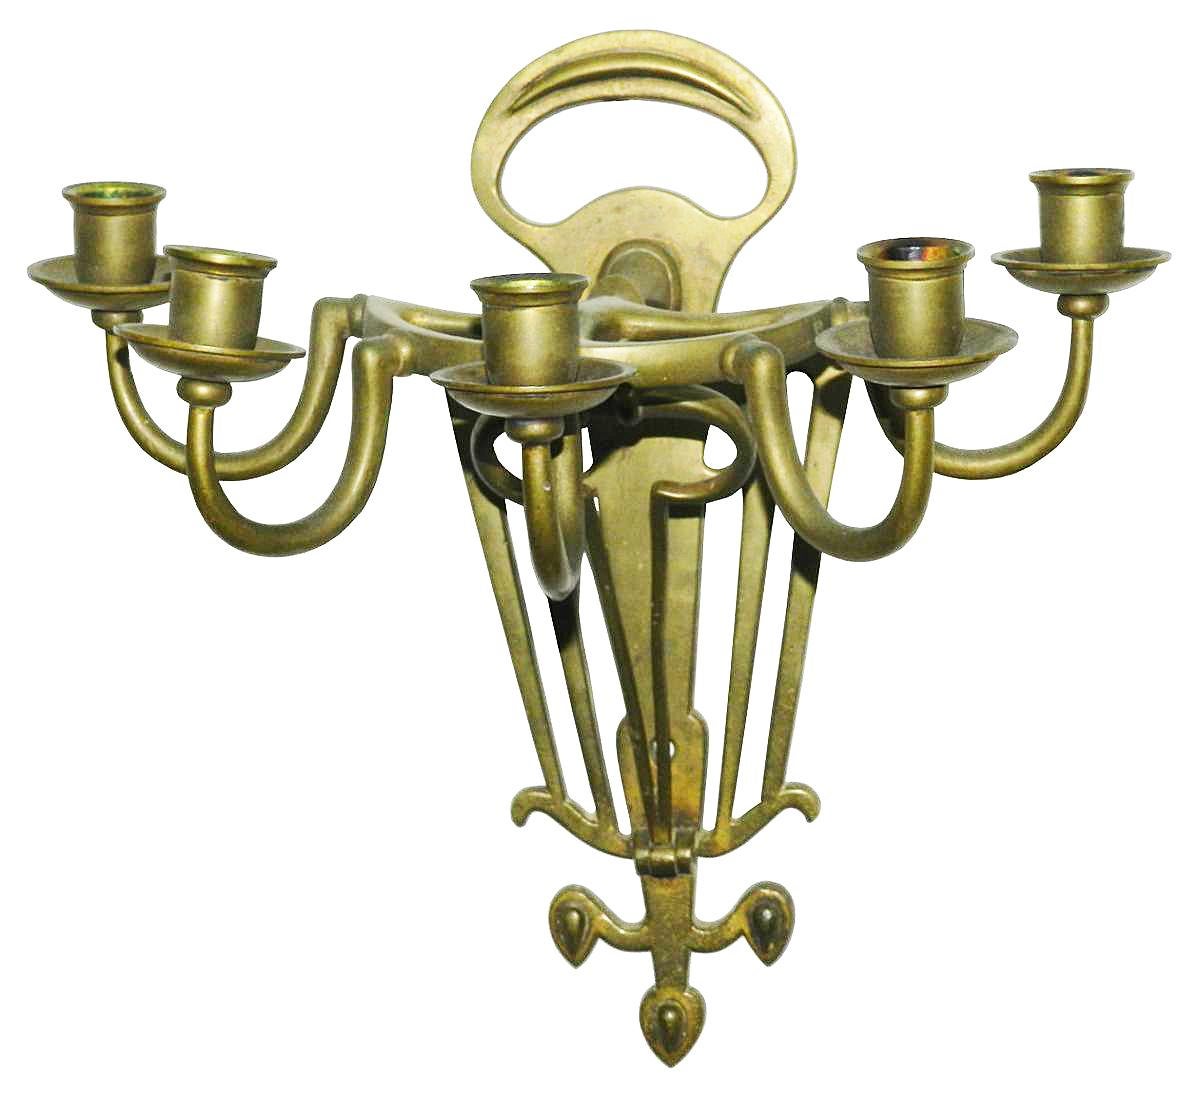 Rare paire d'appliques Jugenstil en bronze, vers 1900.
Fin du XIXe siècle début du XXe siècle, créé pour un éclairage à la bougie.
 